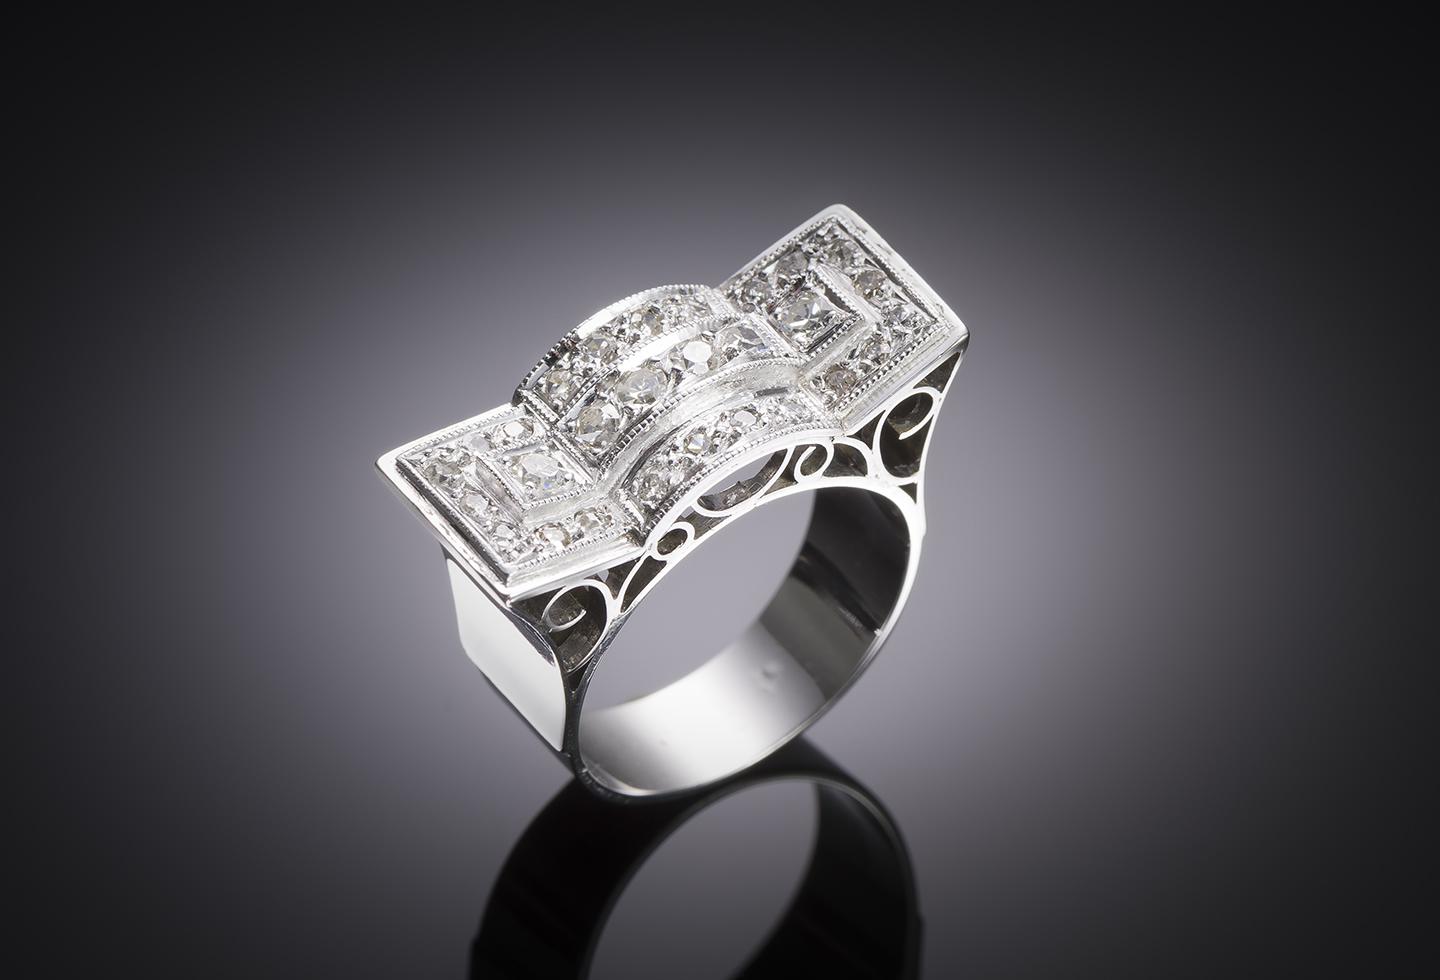 Modernist geometric diamond ring (1 carat)-1